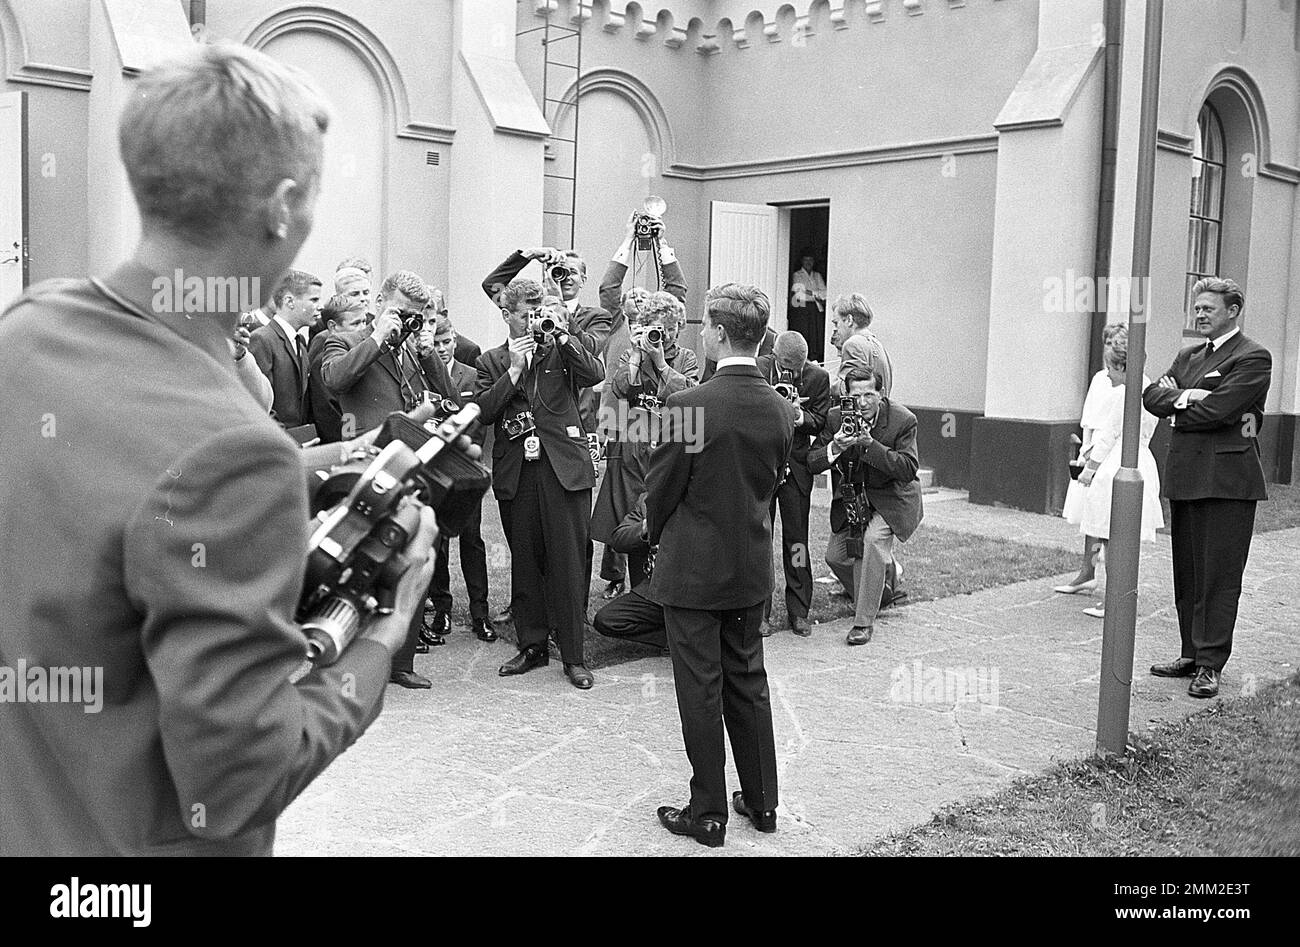 Carl XVI Gustaf, König von Schweden. Geboren am 30. april 1946. Foto im Zusammenhang mit seiner Bestätigung vom 21. juli 1962 in der Kirche Borgholms auf der Insel Öland. Die Pressphotographen werden beim Fotografieren gesehen. ref. SC1020 Stockfoto